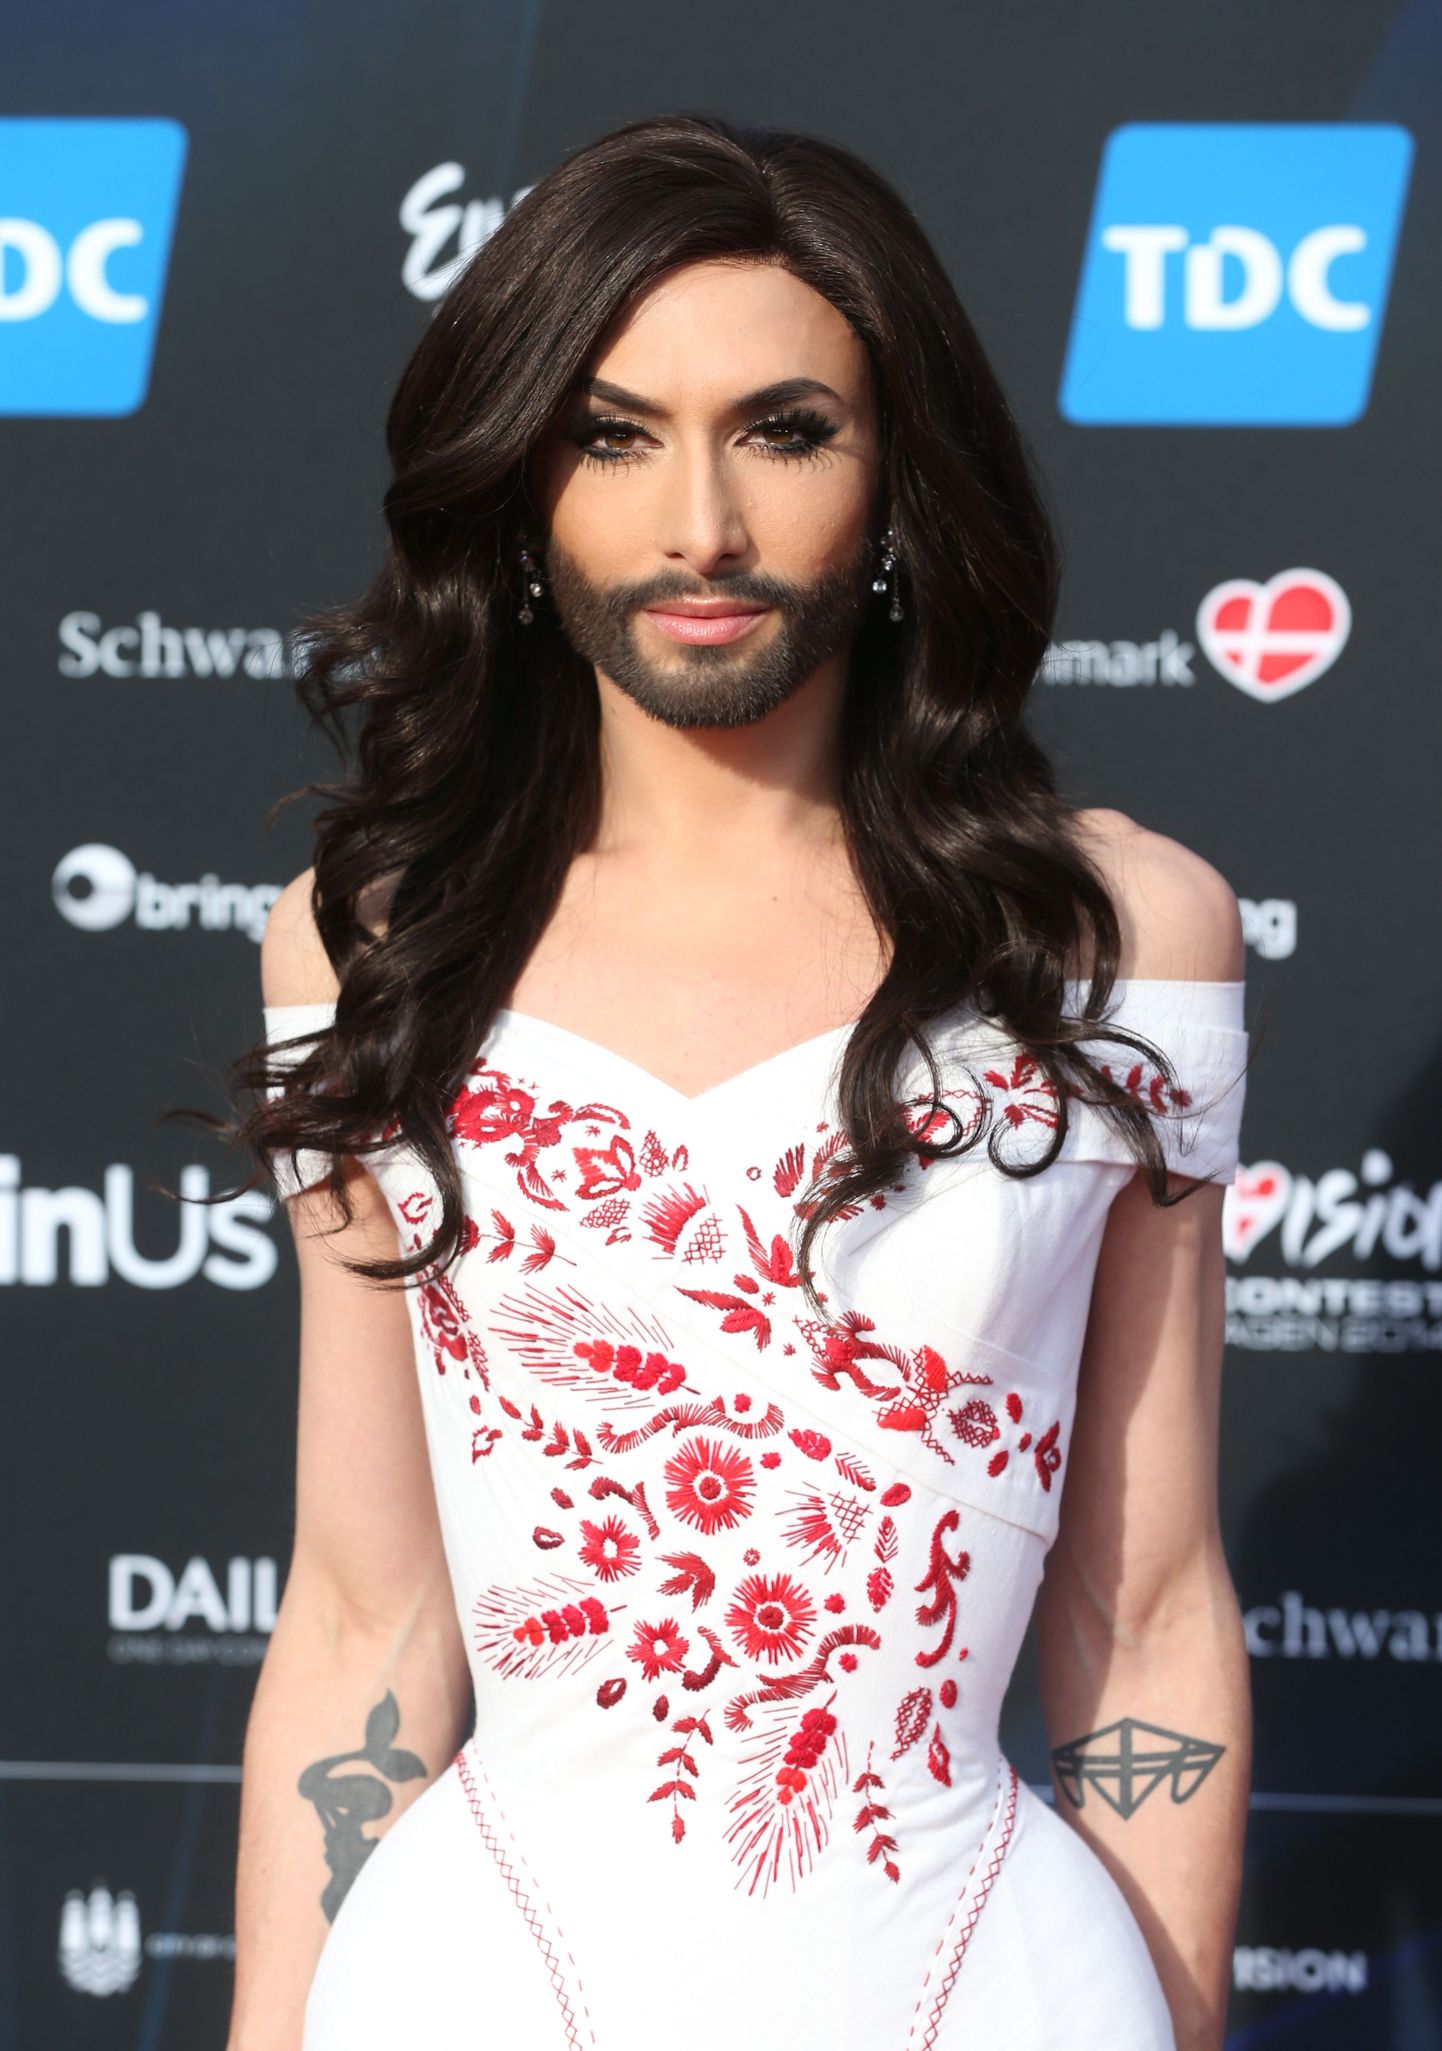 Austria Eurovisiooni esindaja Conchita Wurst